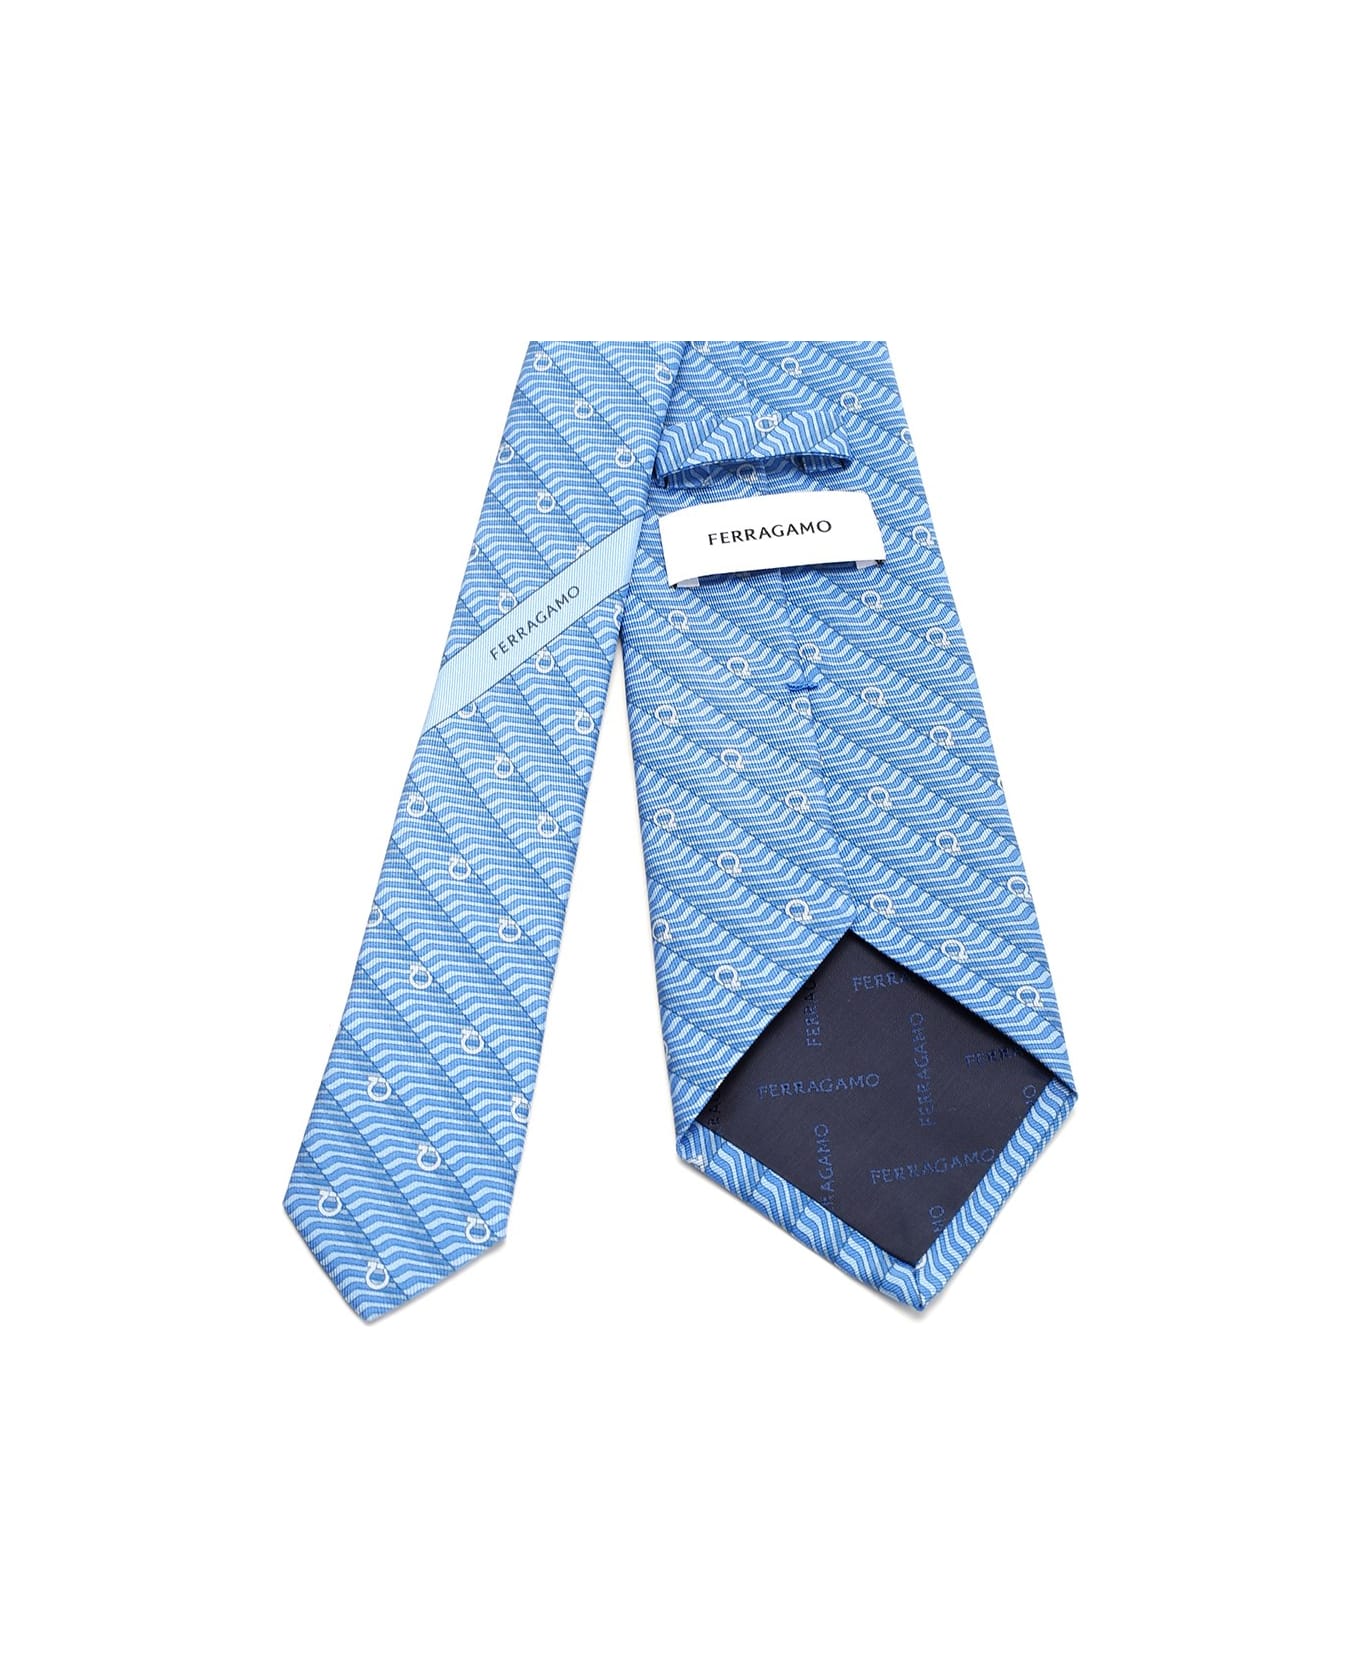 Ferragamo Silk Tie With 'sogno' Print - F.azzurro